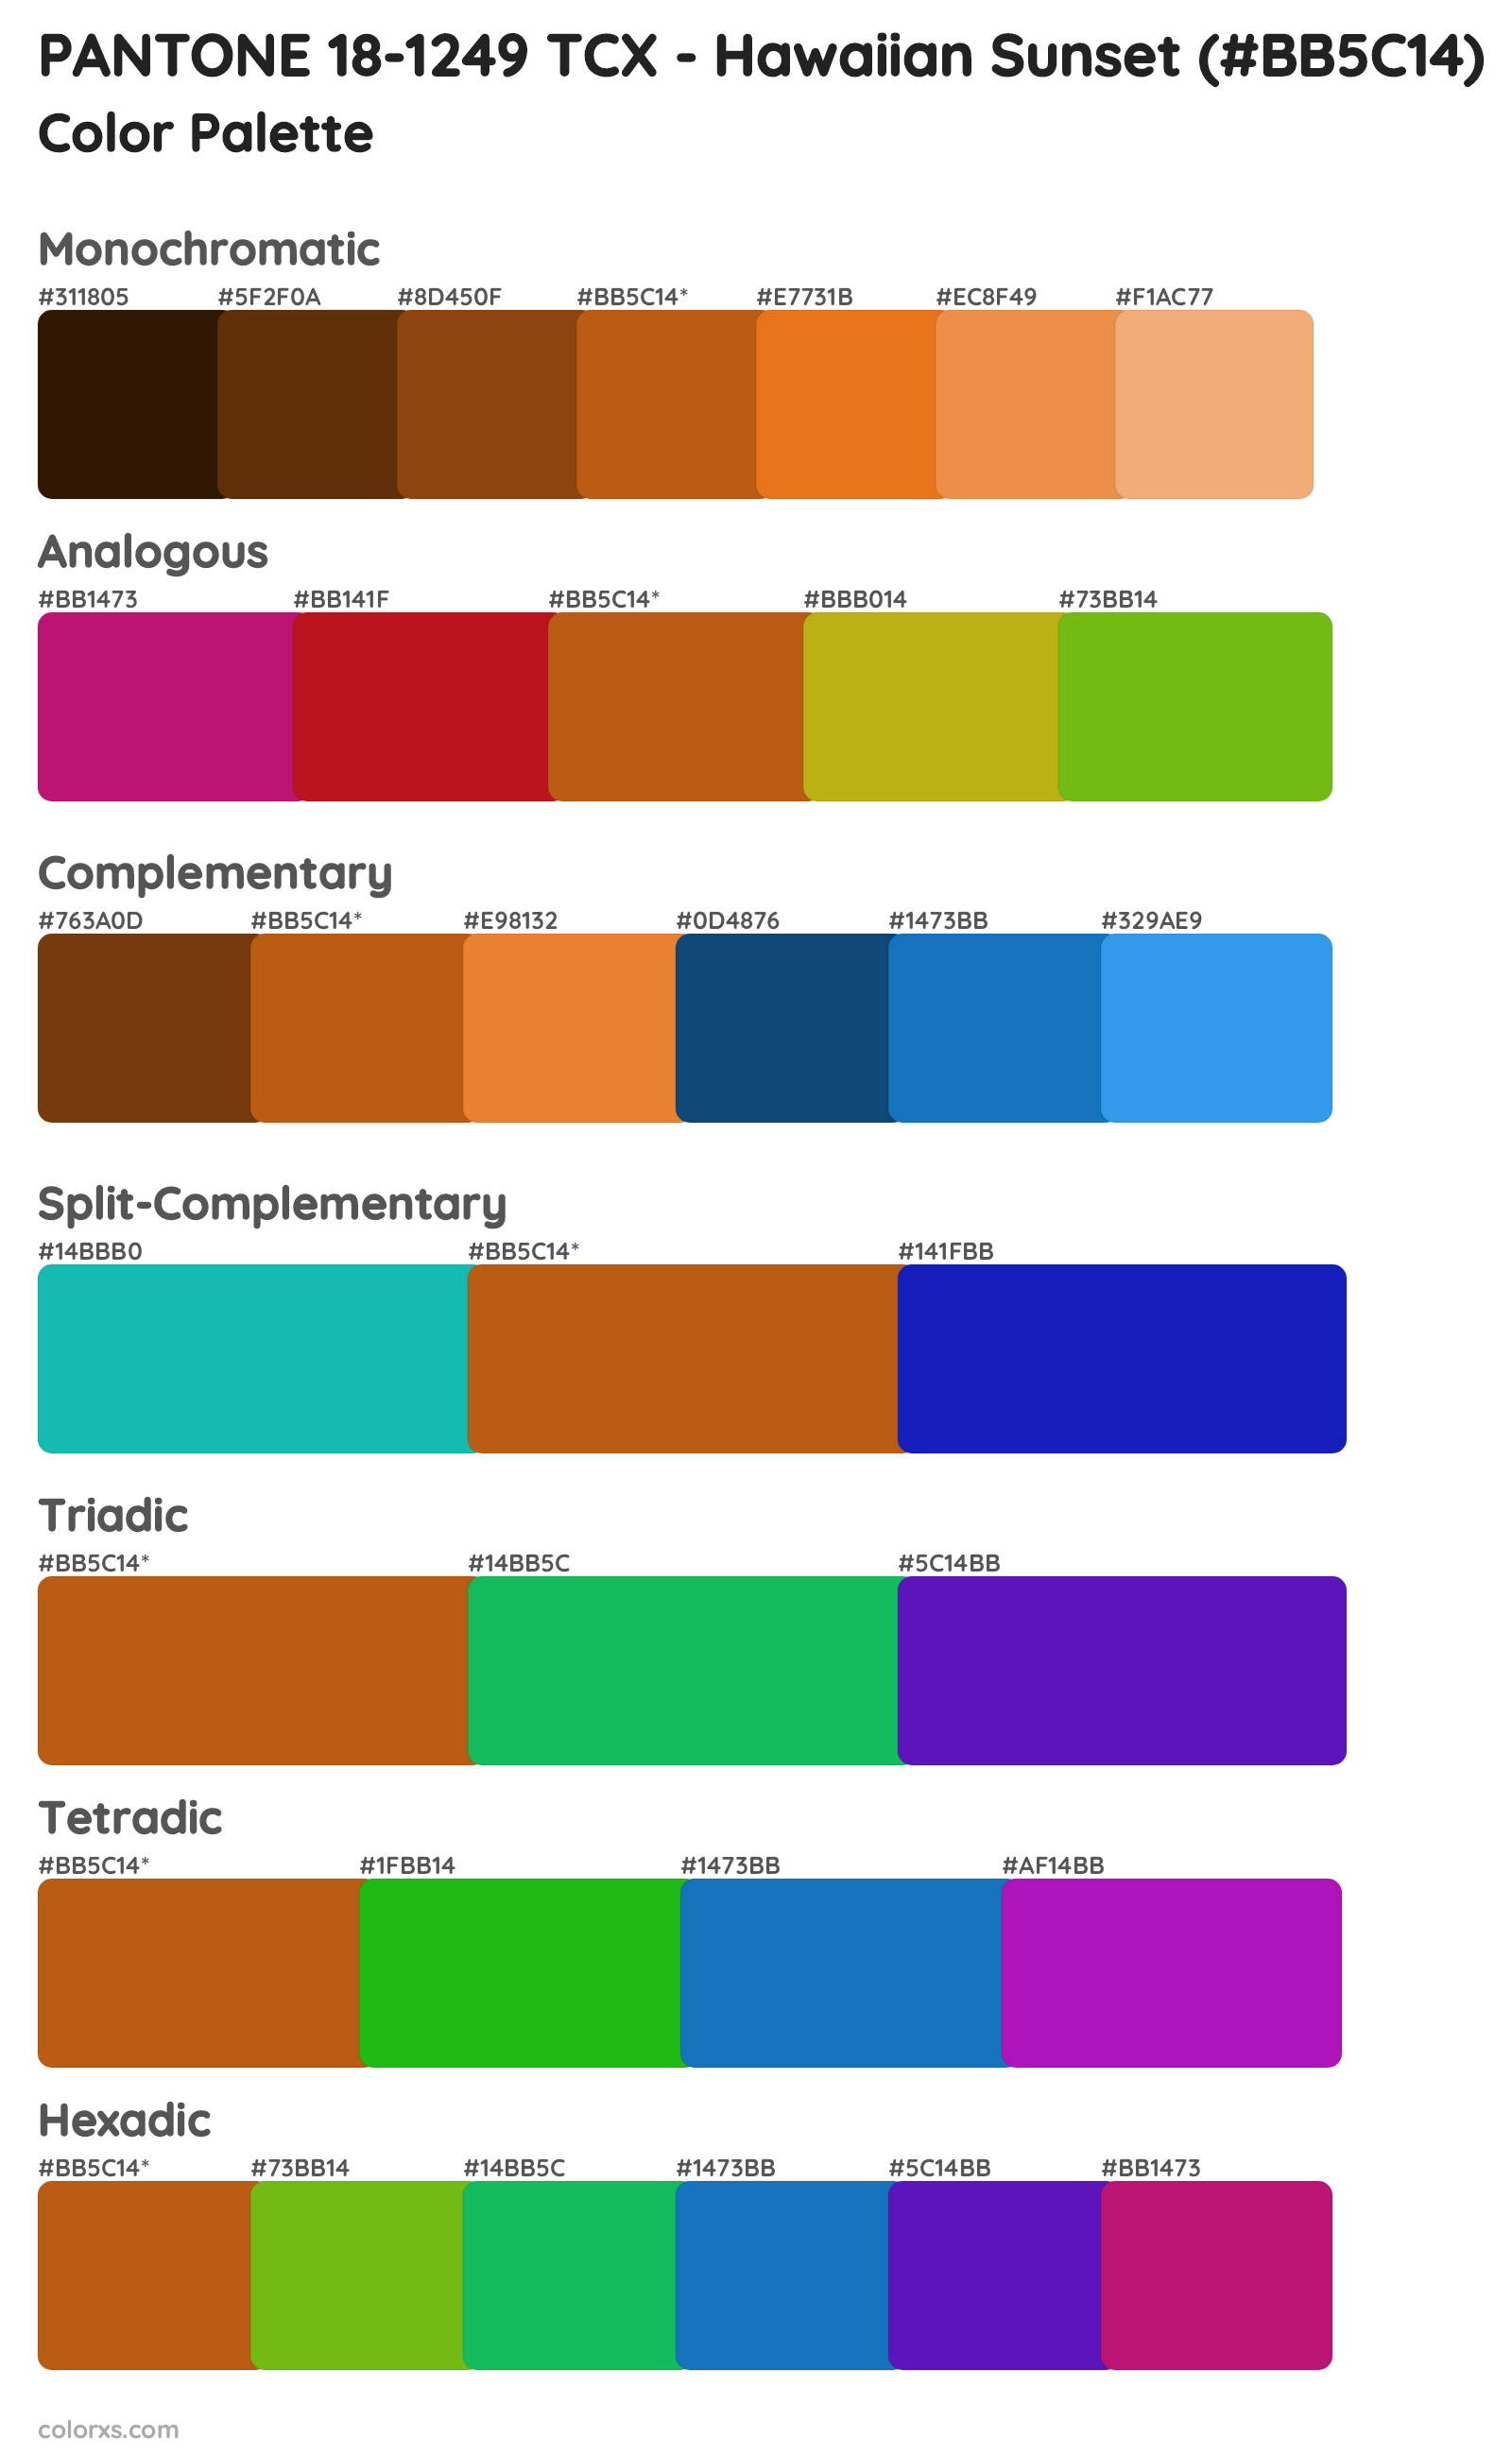 PANTONE 18-1249 TCX - Hawaiian Sunset Color Scheme Palettes